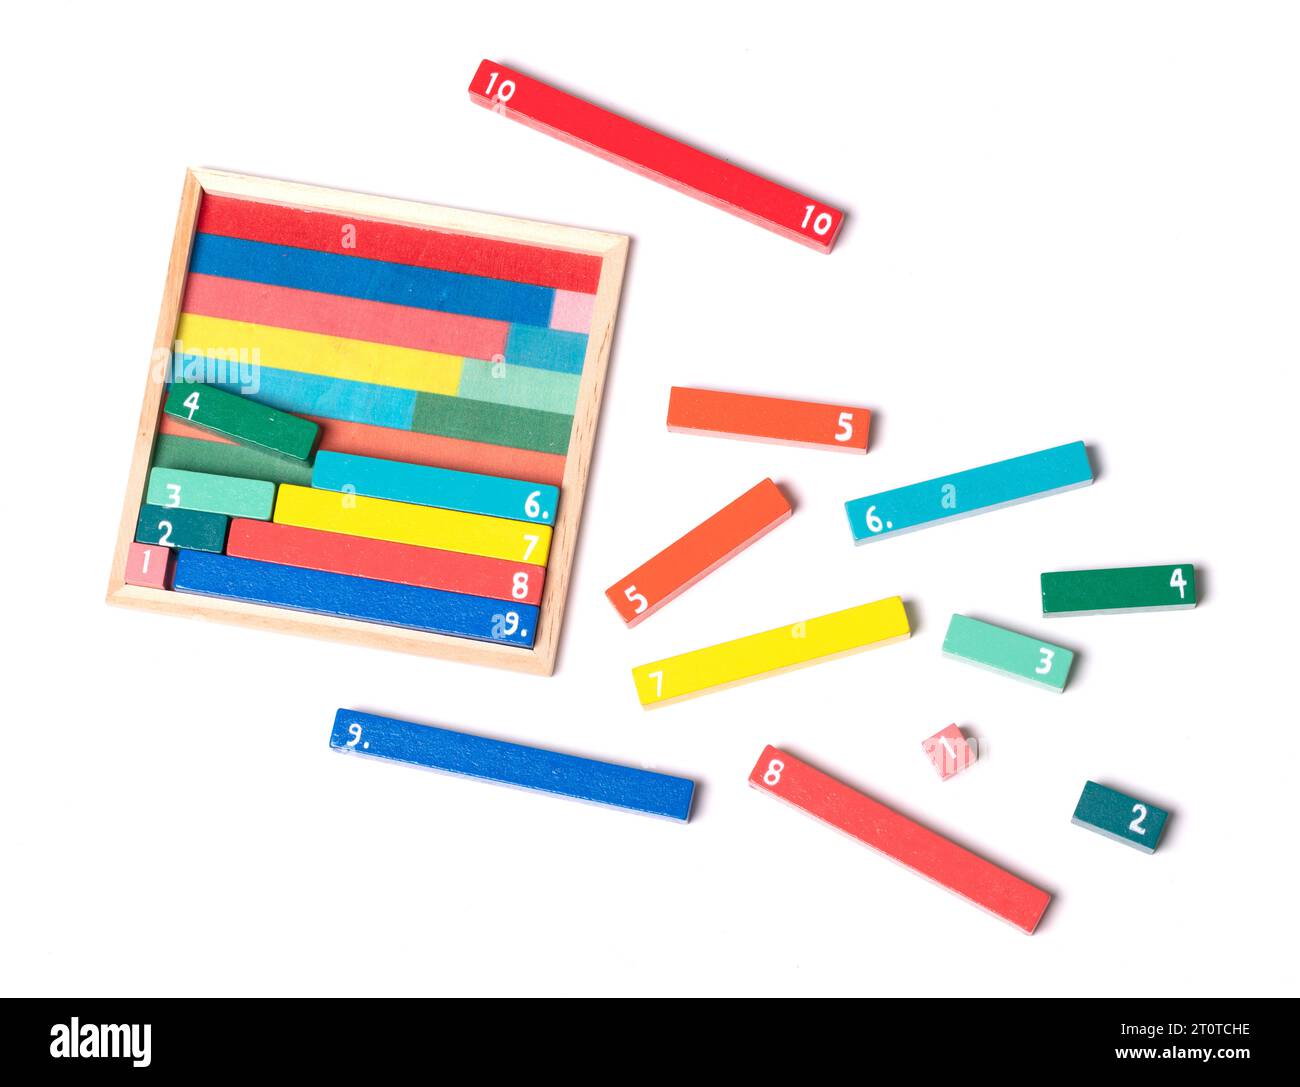 Barras de conteo de madera utilizadas para calcular las matemáticas utilizando el color y la forma en los libros de la primera escuela, amigos de diez Foto de stock